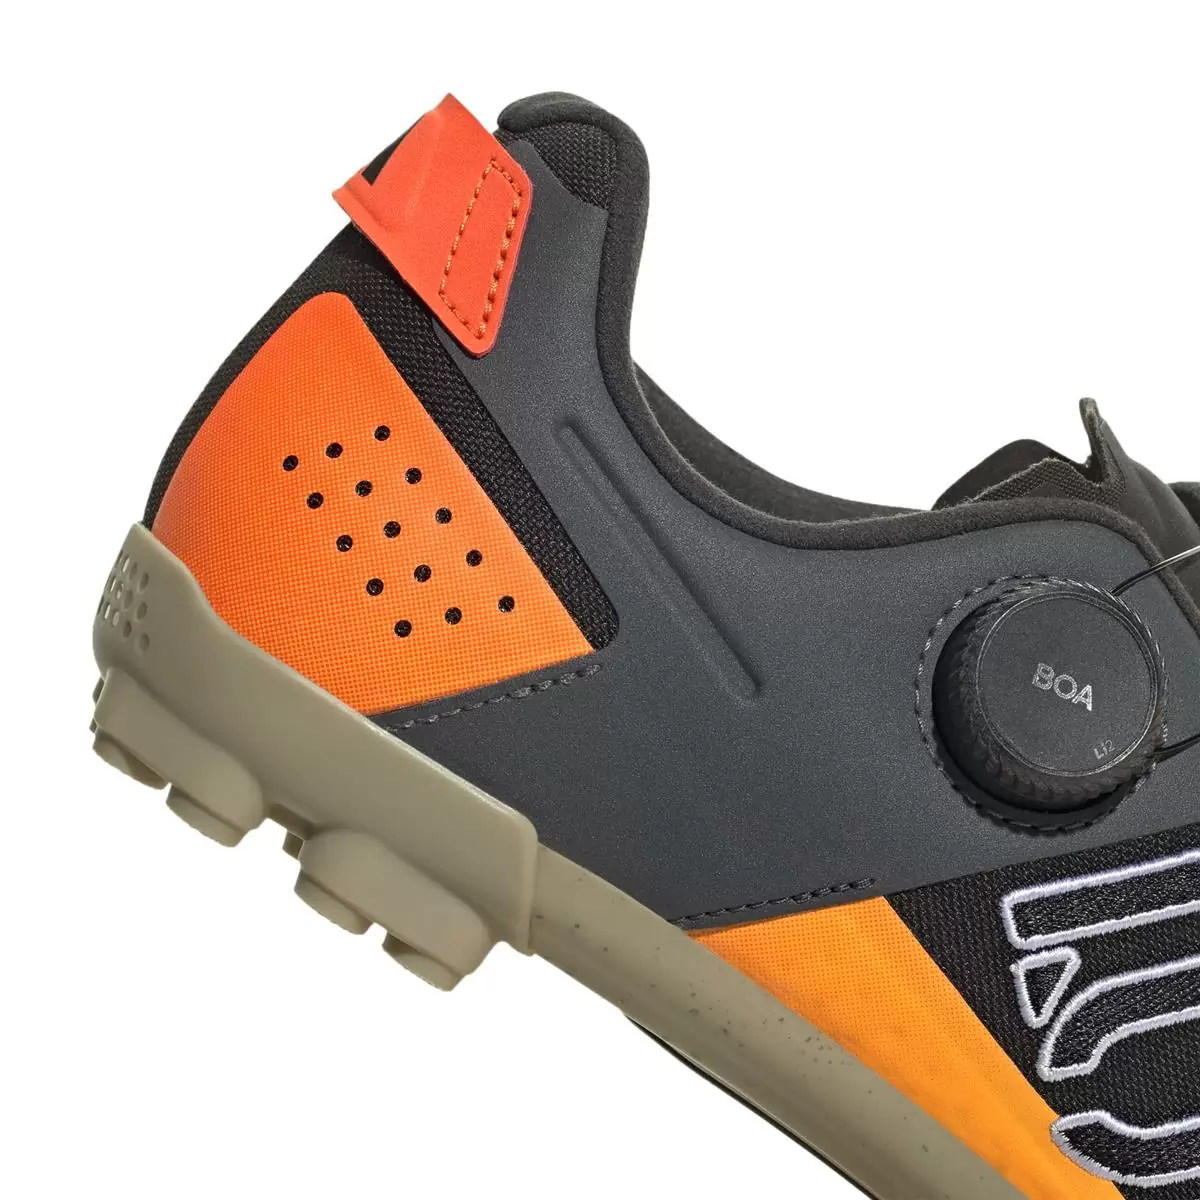 Clip 5.10 Kestrel Boa MTB Shoes Black/Orange Size 44 #7